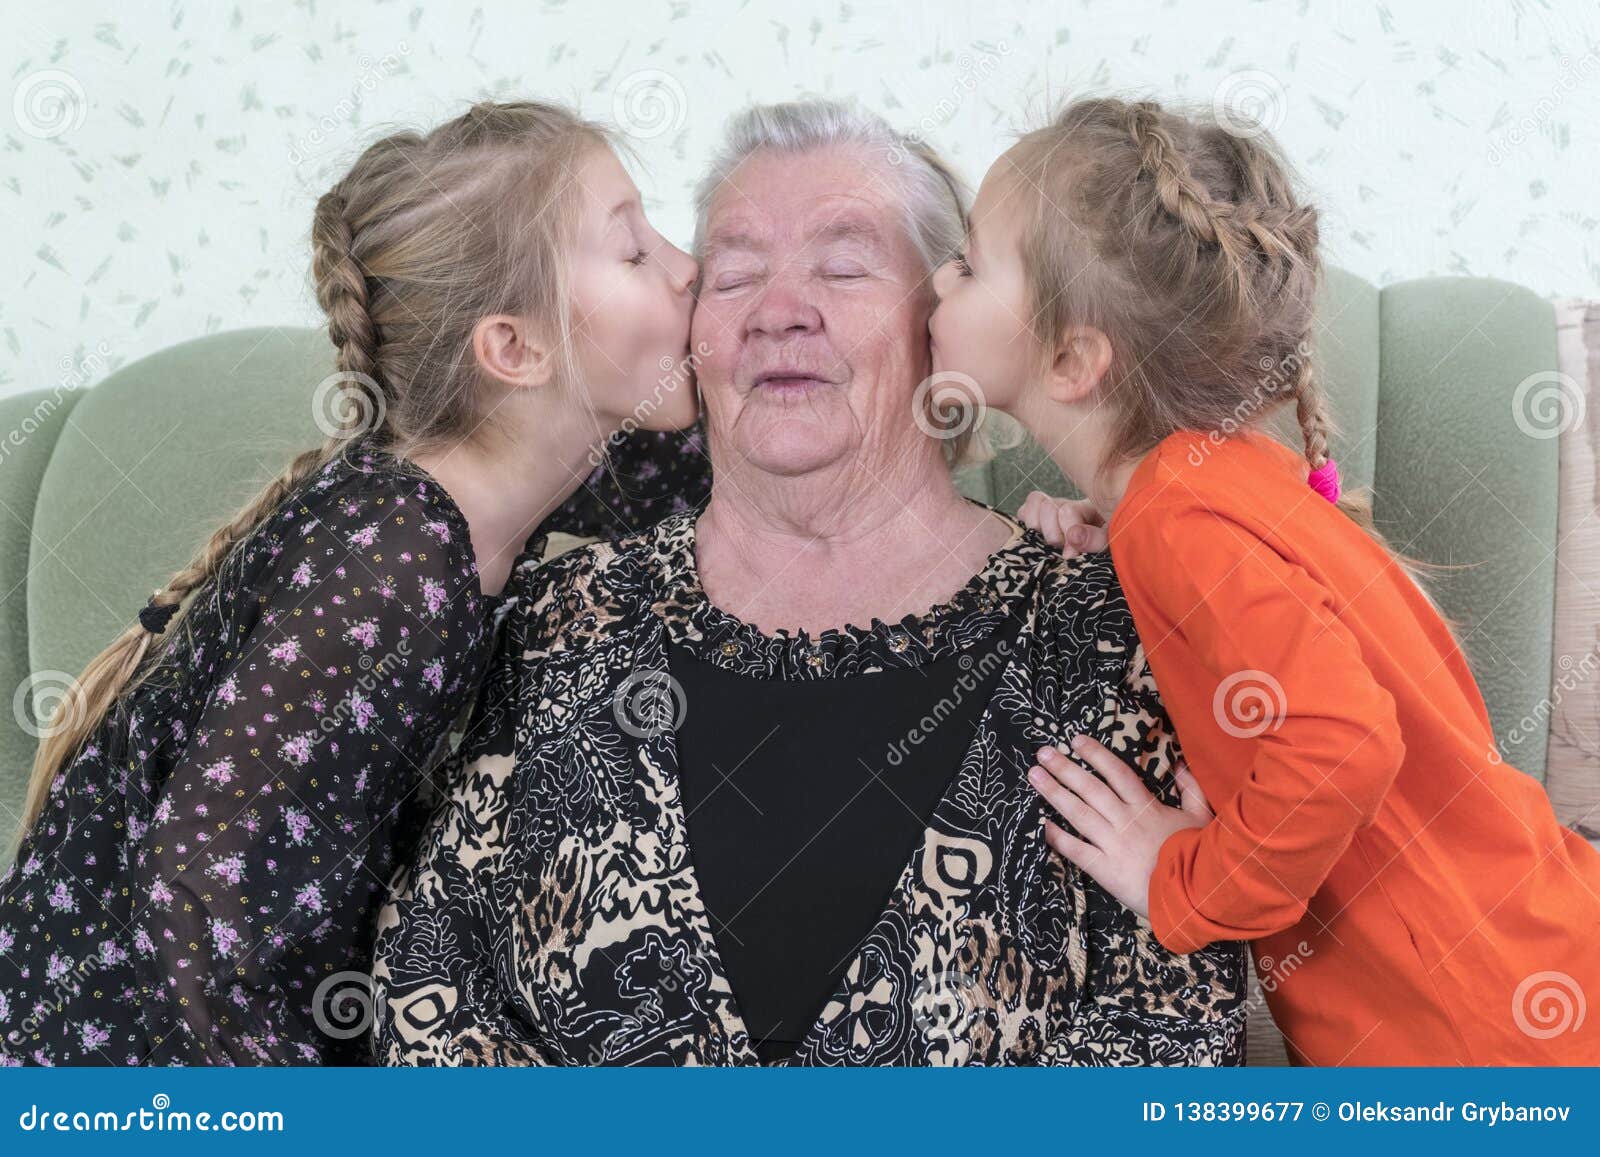 бабушка трахает детей фото 36